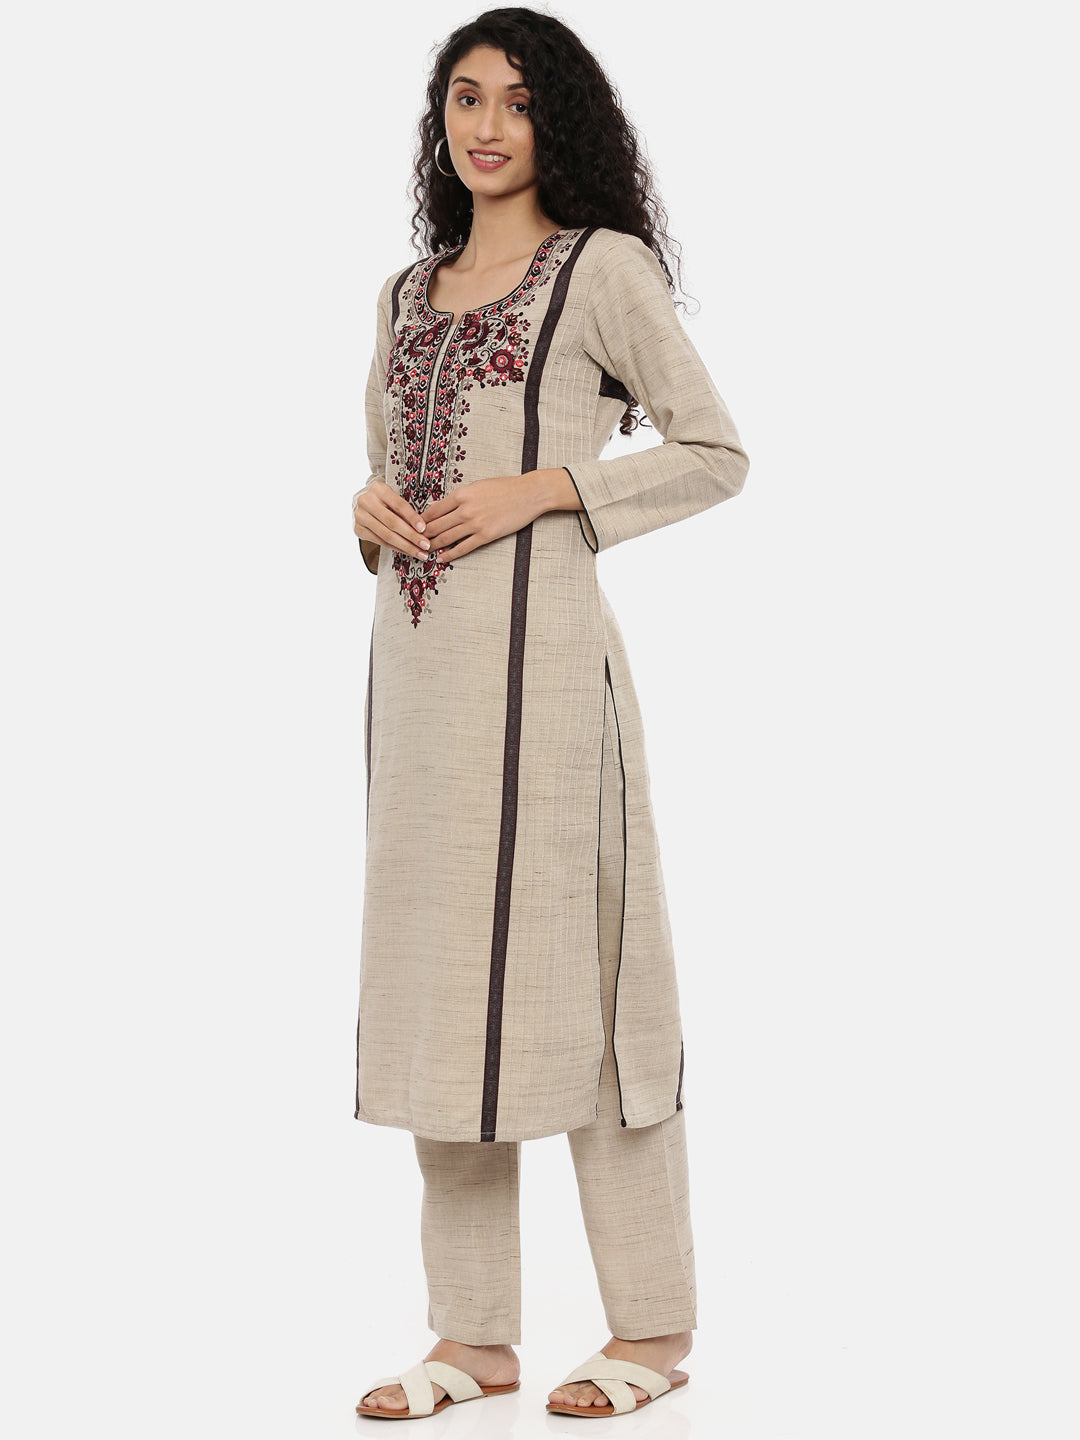 Neeru's Beige Color Chanderi Fabric Full Sleeves Suit-Pant